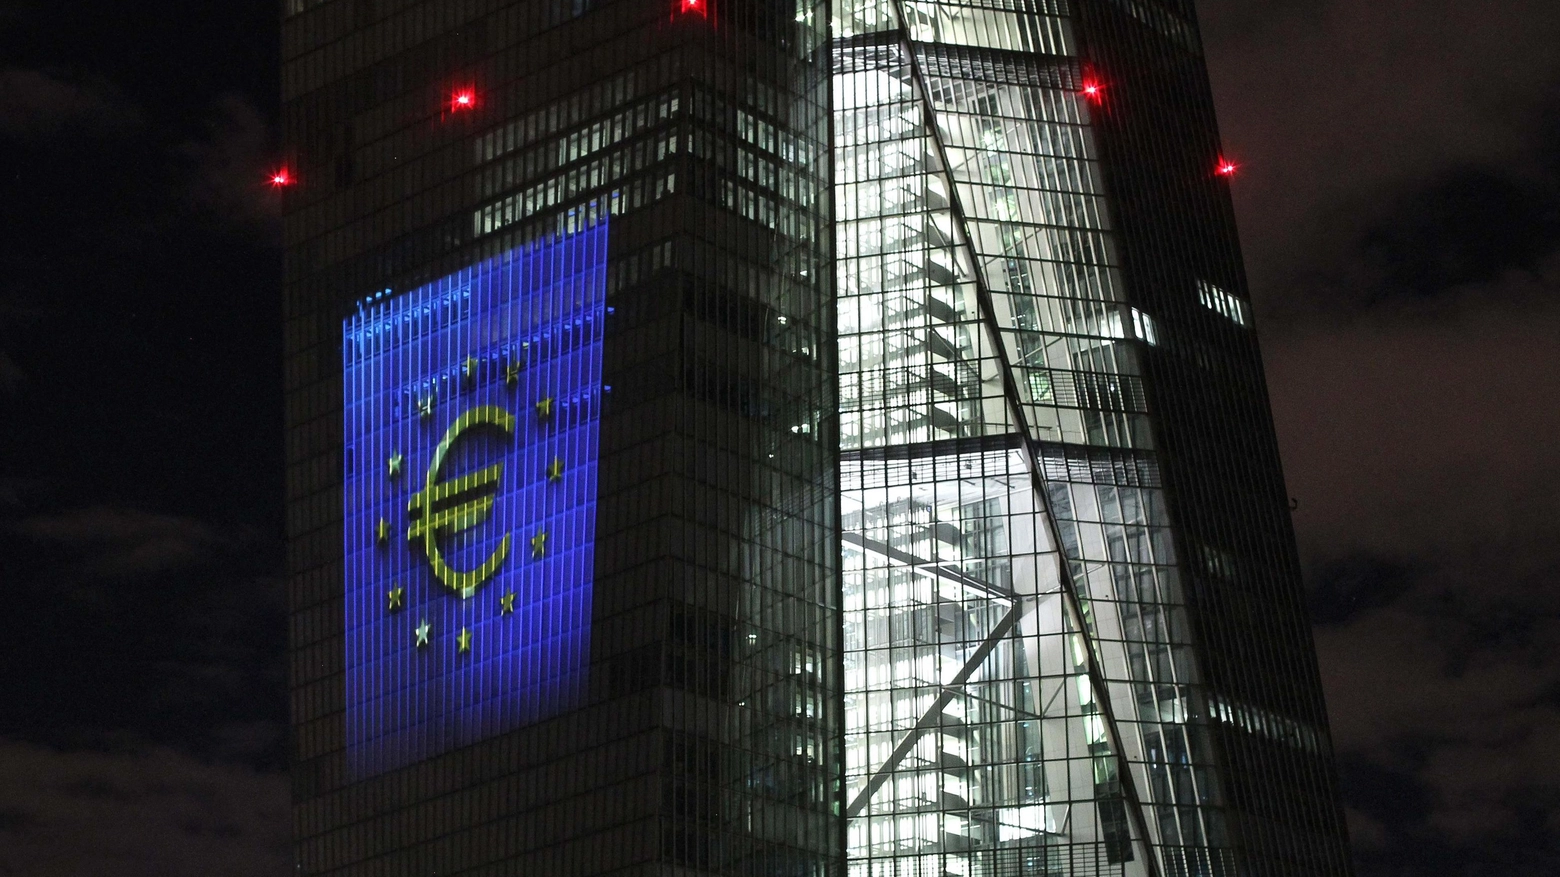 La torre della Bce illuminata il simbolo dell'euro